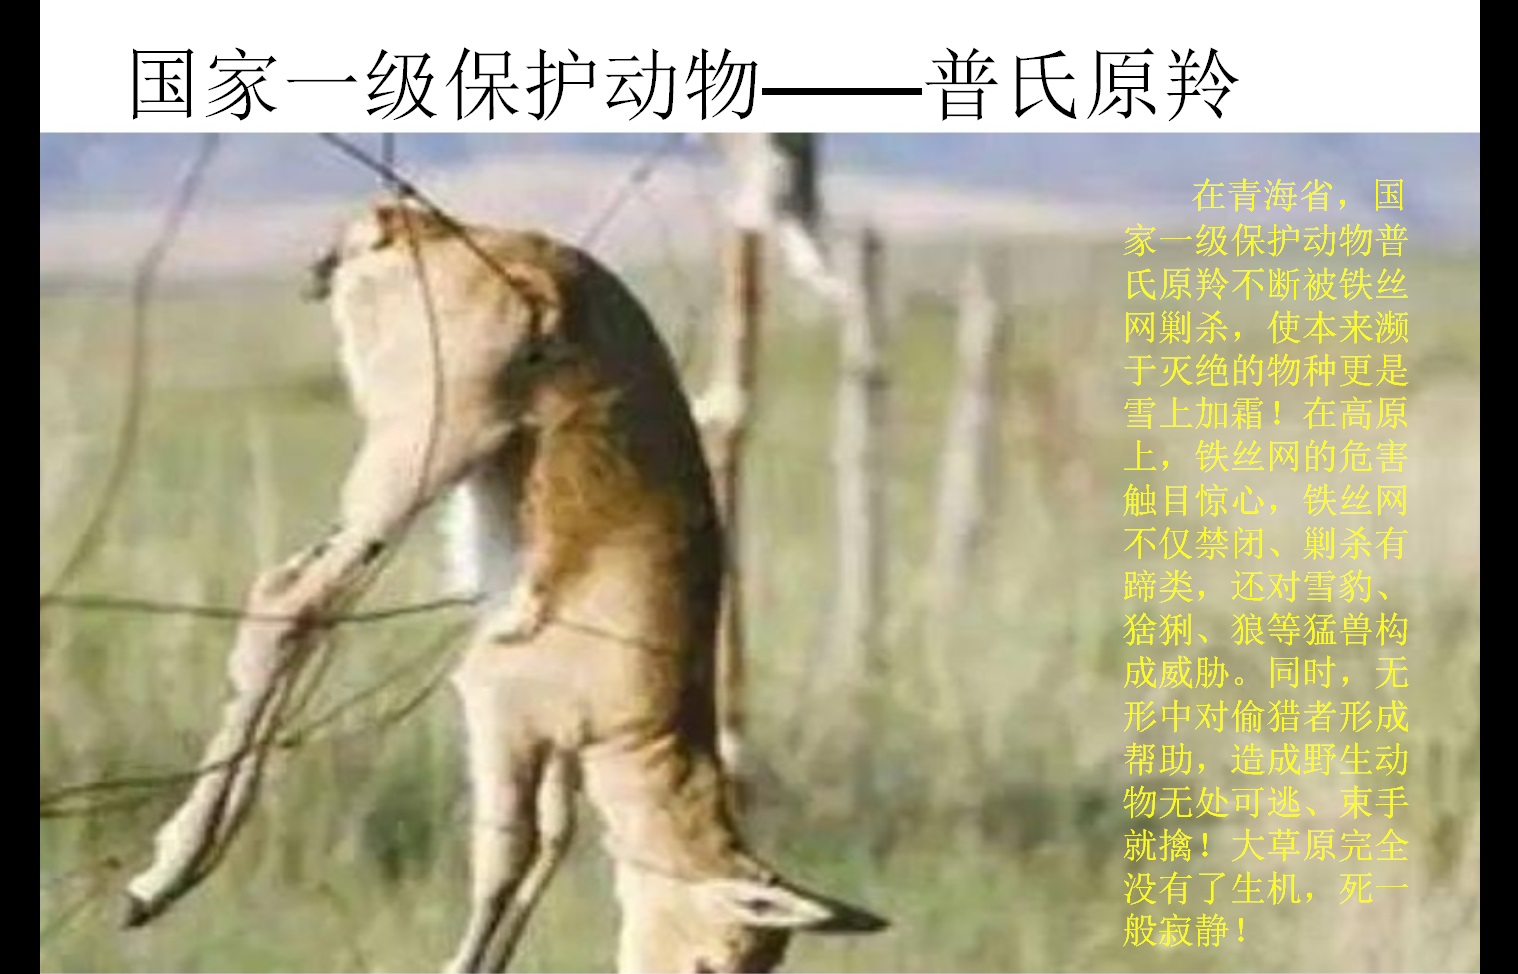 5 青藏高原生态保护法 边境铁丝网 普氏原羚 马鸣发言稿_20220922.jpg